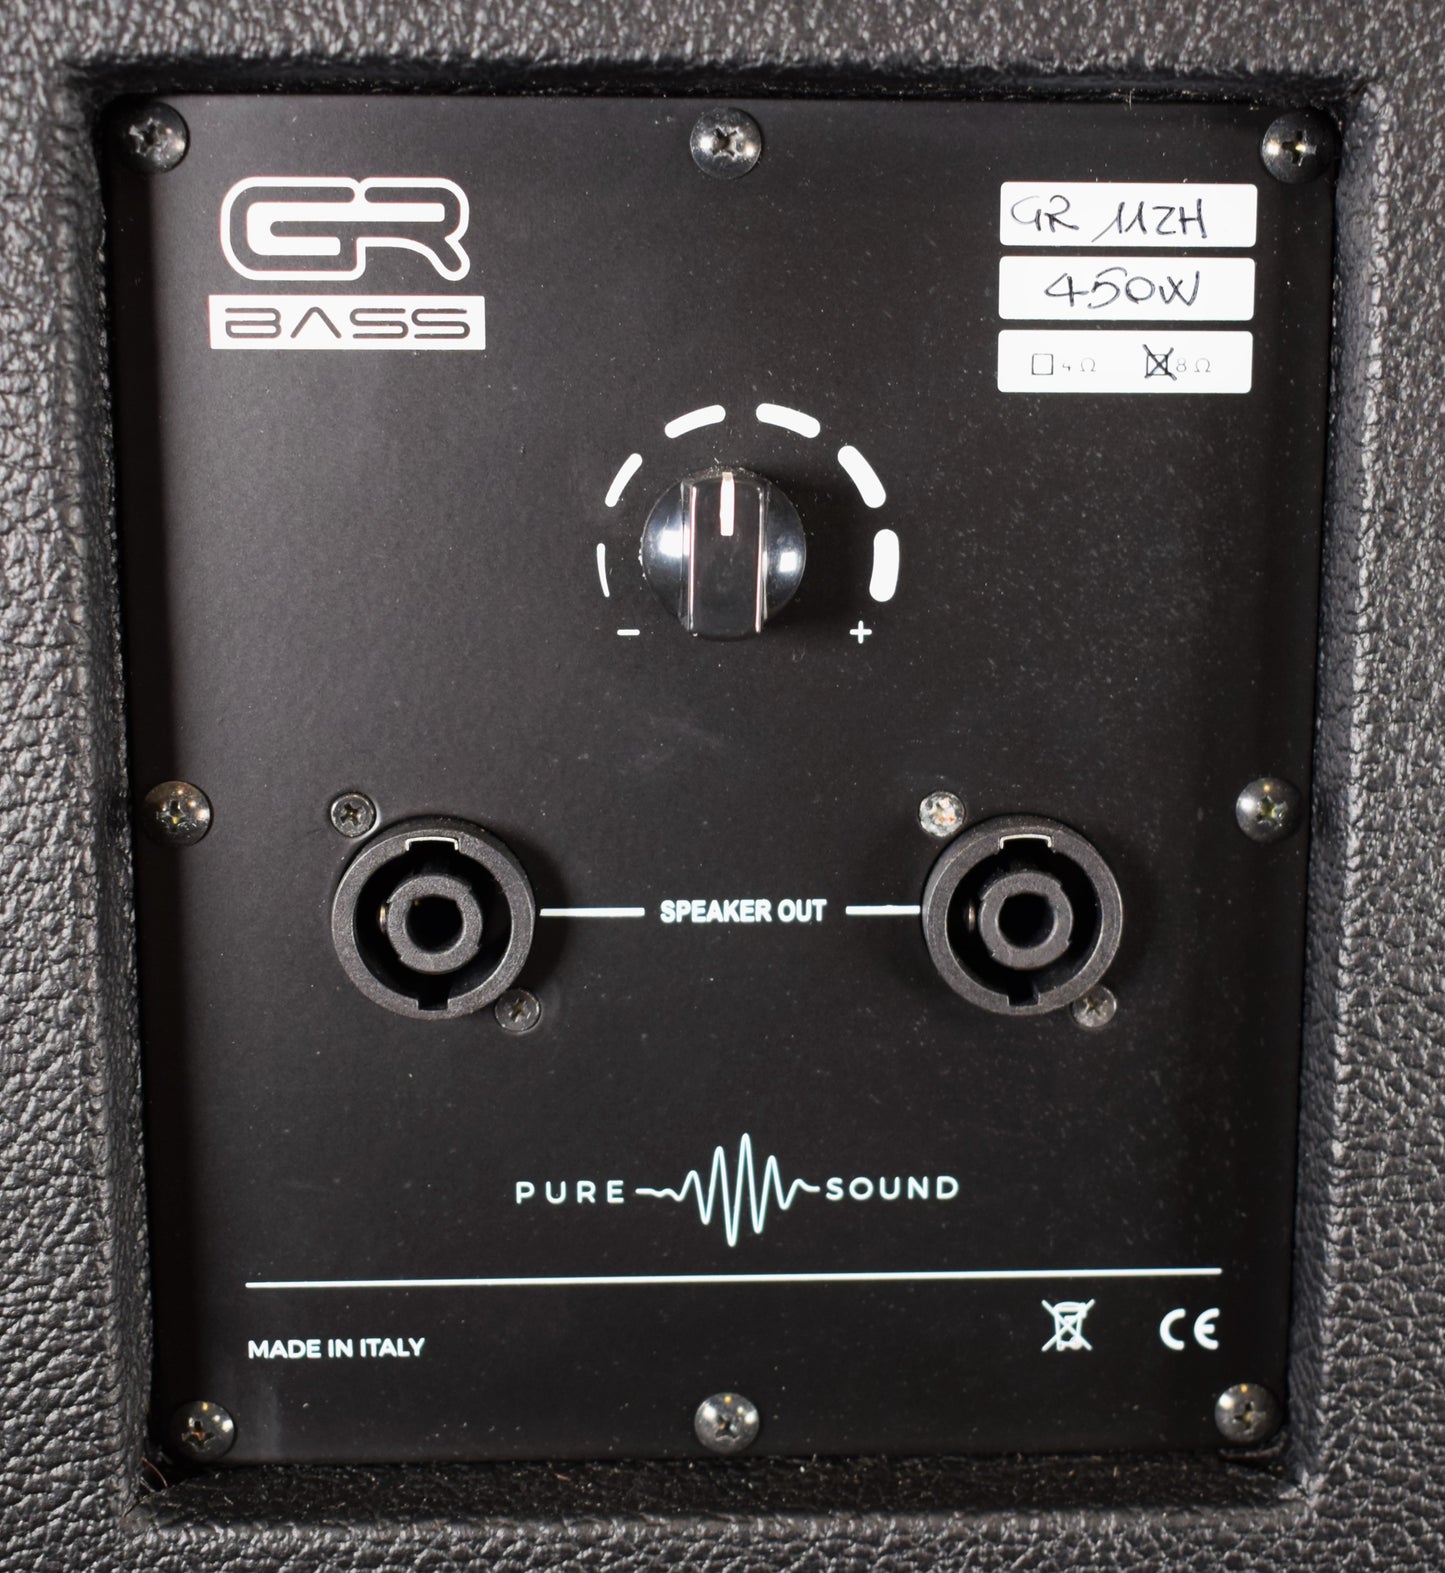 GR Bass GR112H 12" Ultra Lightweight Bass Amplifier Speaker Cabinet Black 8 Ohm